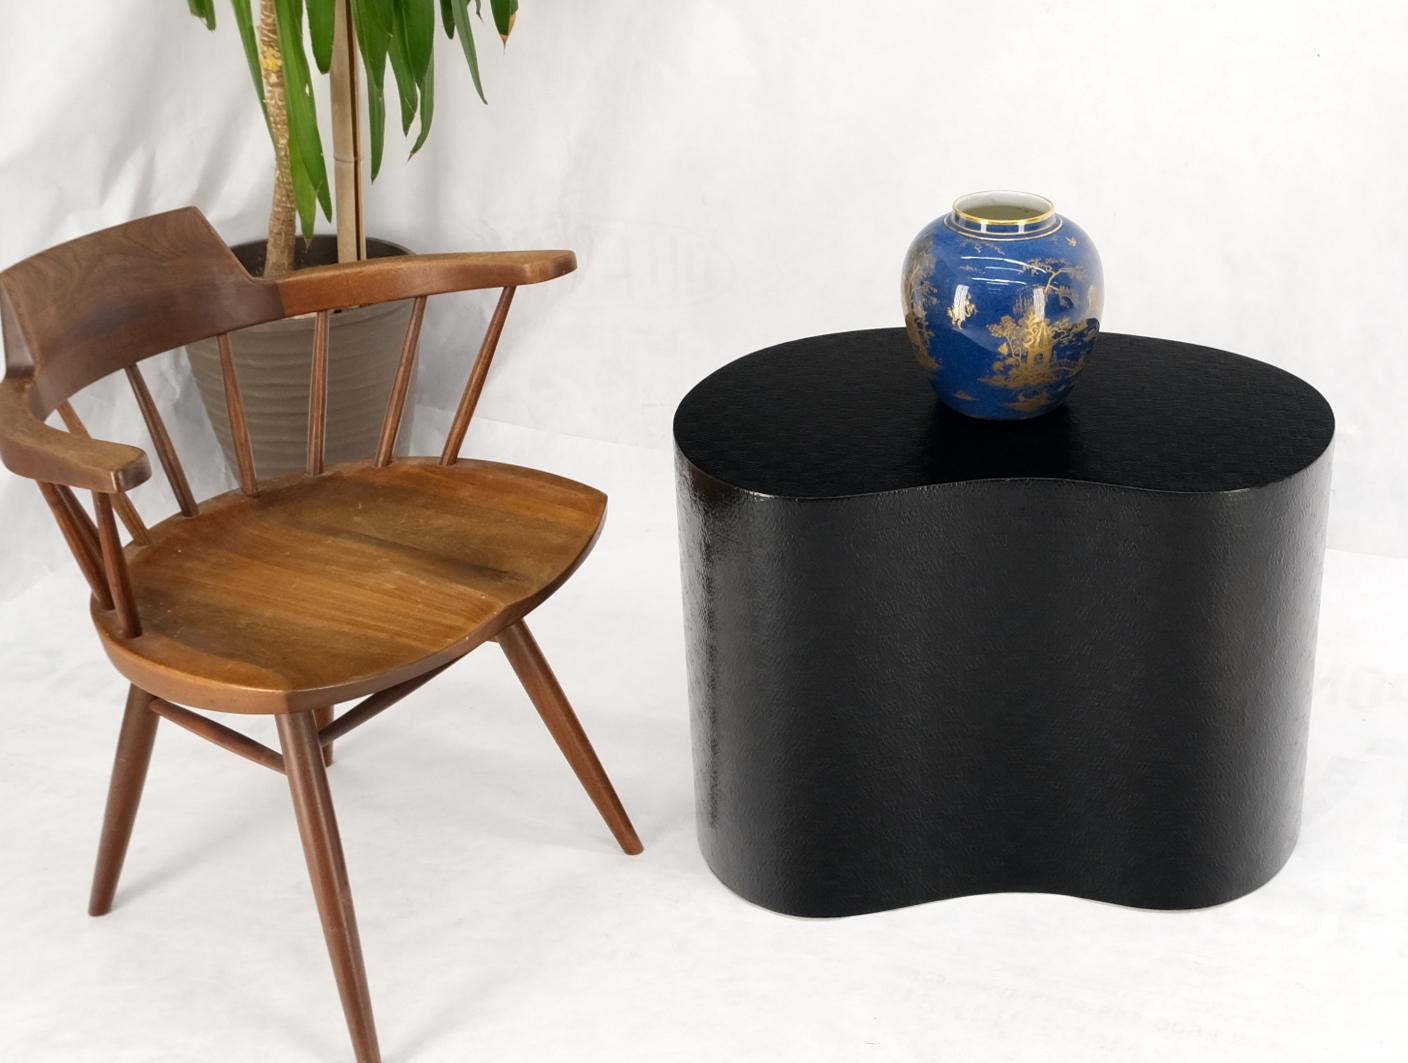 Table basse d'appoint en forme de rein, laquée noire et recouverte de raphia.
Pièce de studio conçue sur mesure.